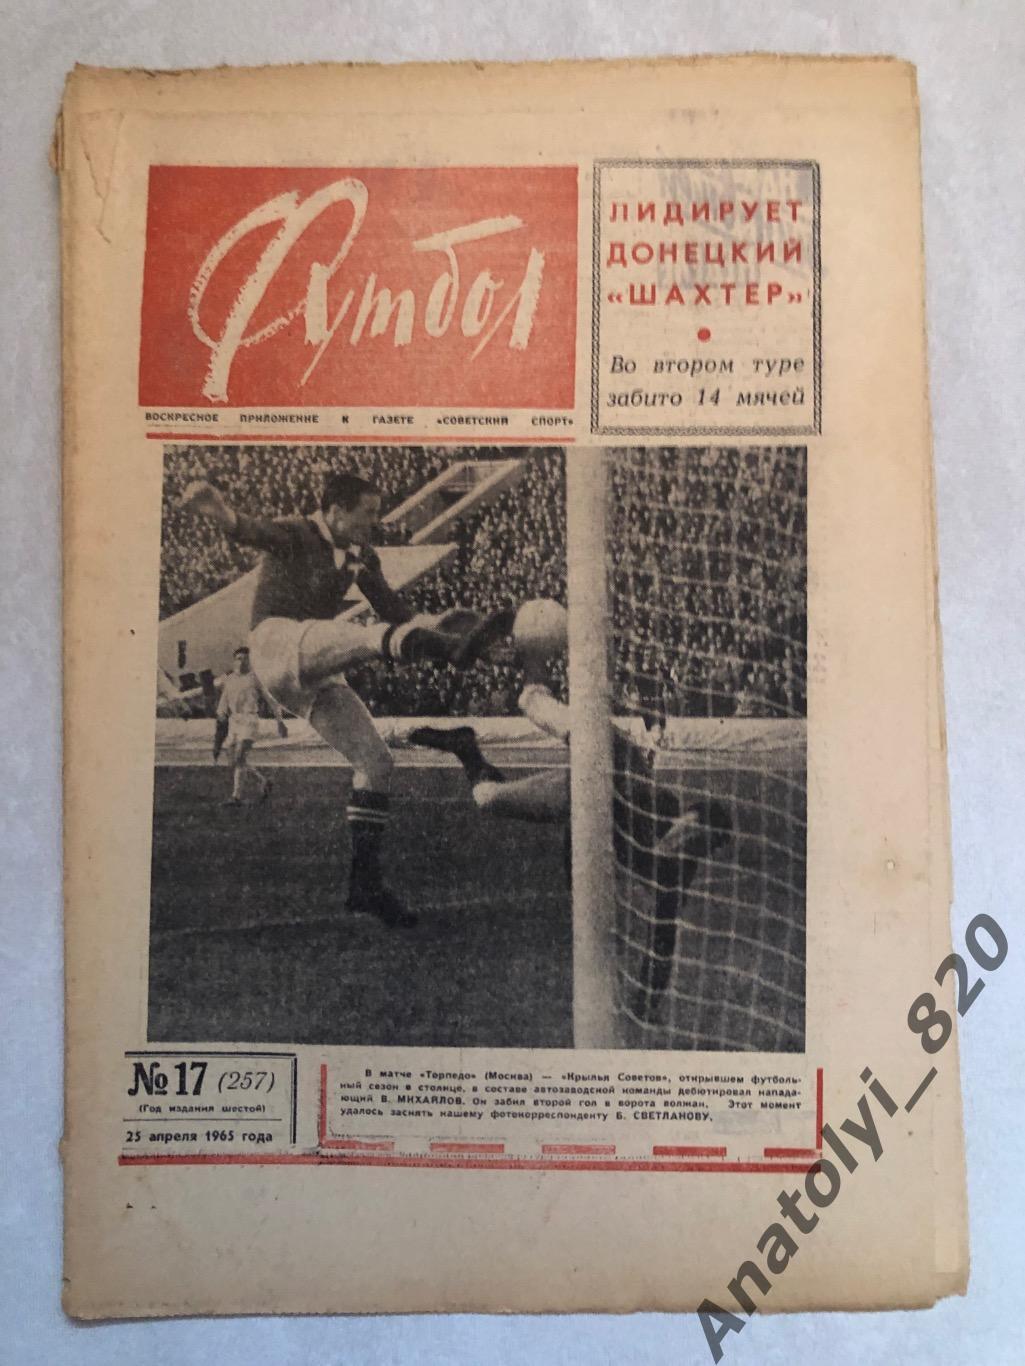 Еженедельник футбол номер 17 от 25.04.1965